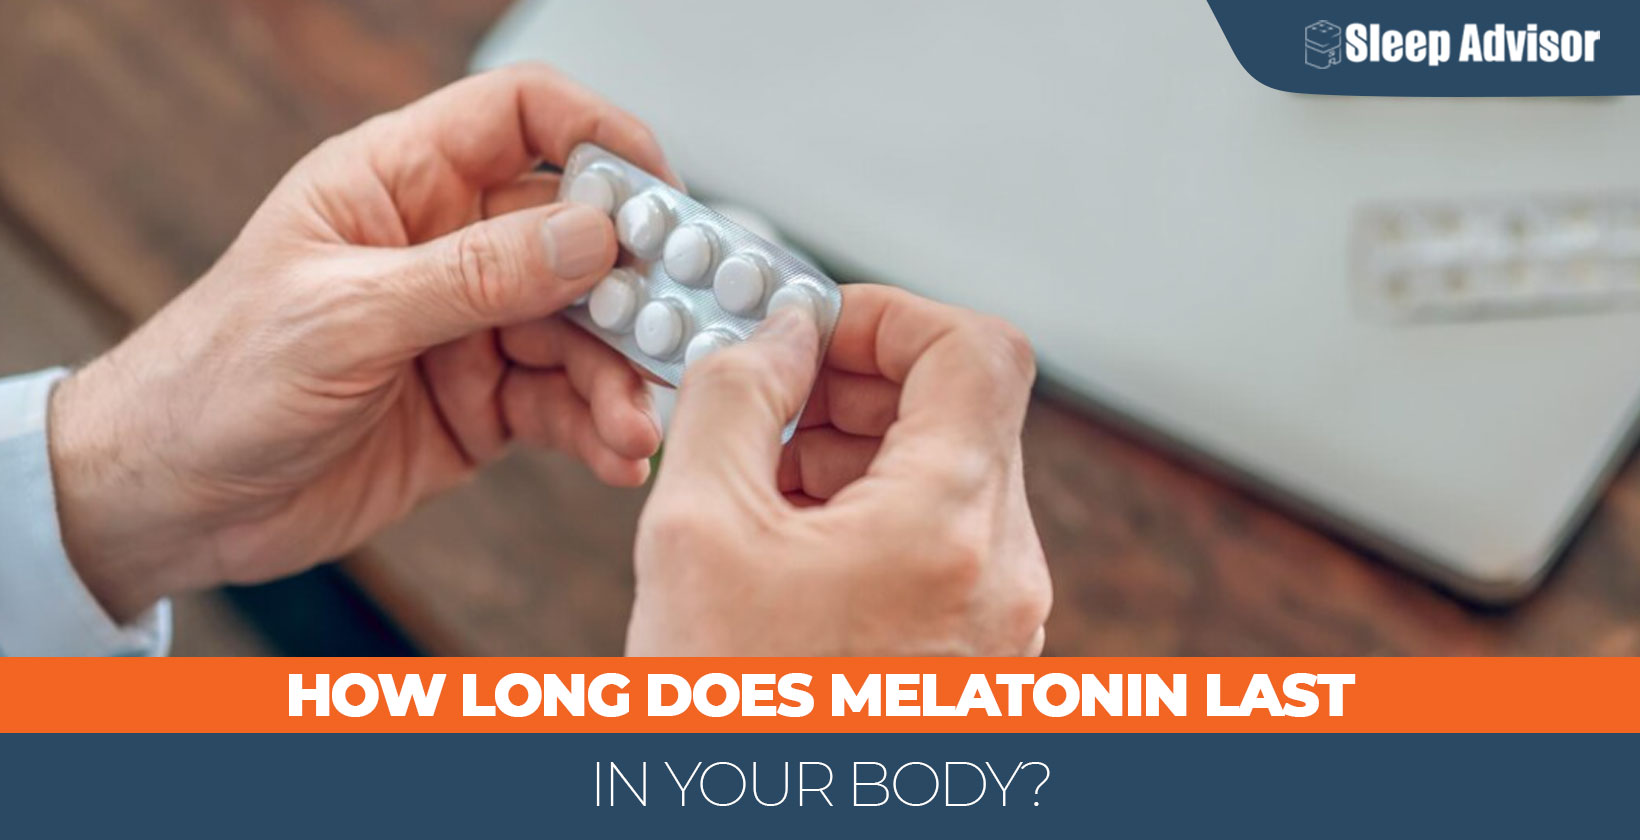 How Long Does Melatonin Last in Your Body?